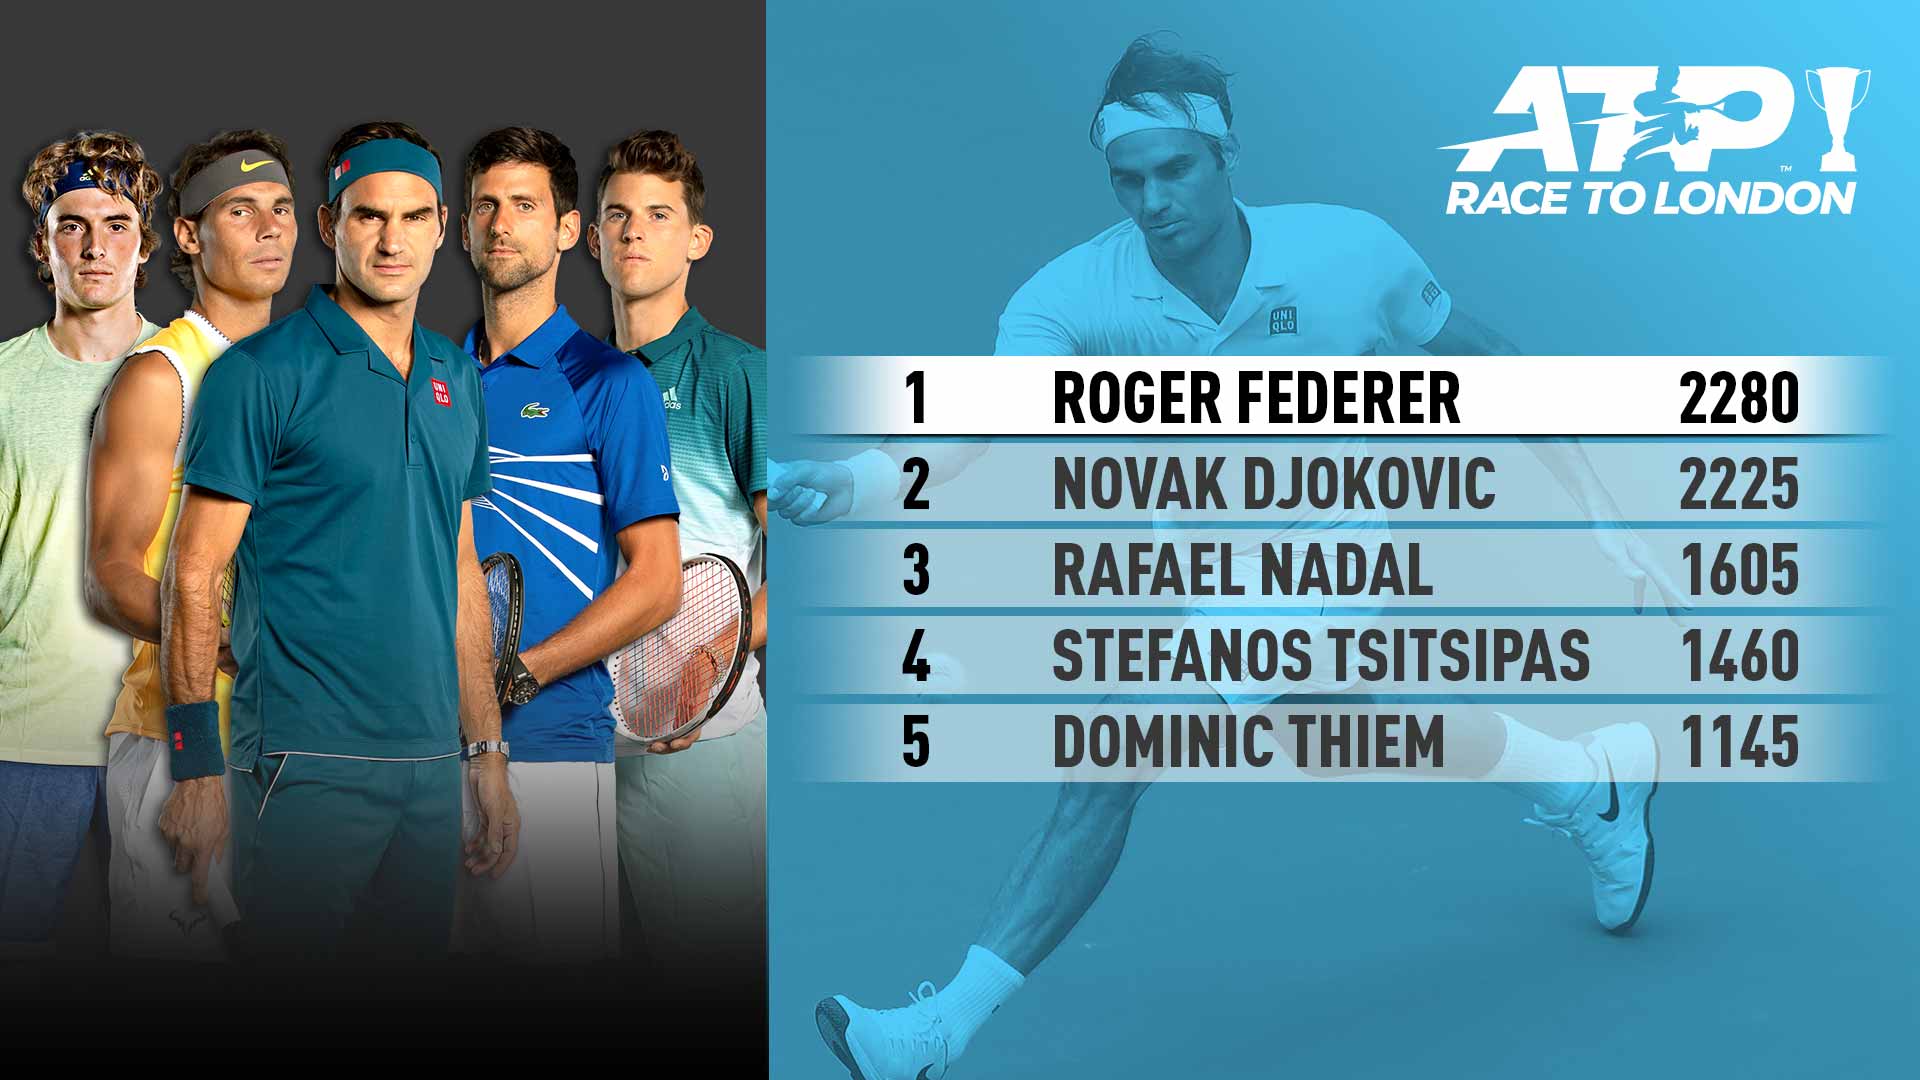 Roger Federer sube al liderazgo de la Carrrera ATP A Londres luego de su título en el Miami Open presentado por Itaú 2019.